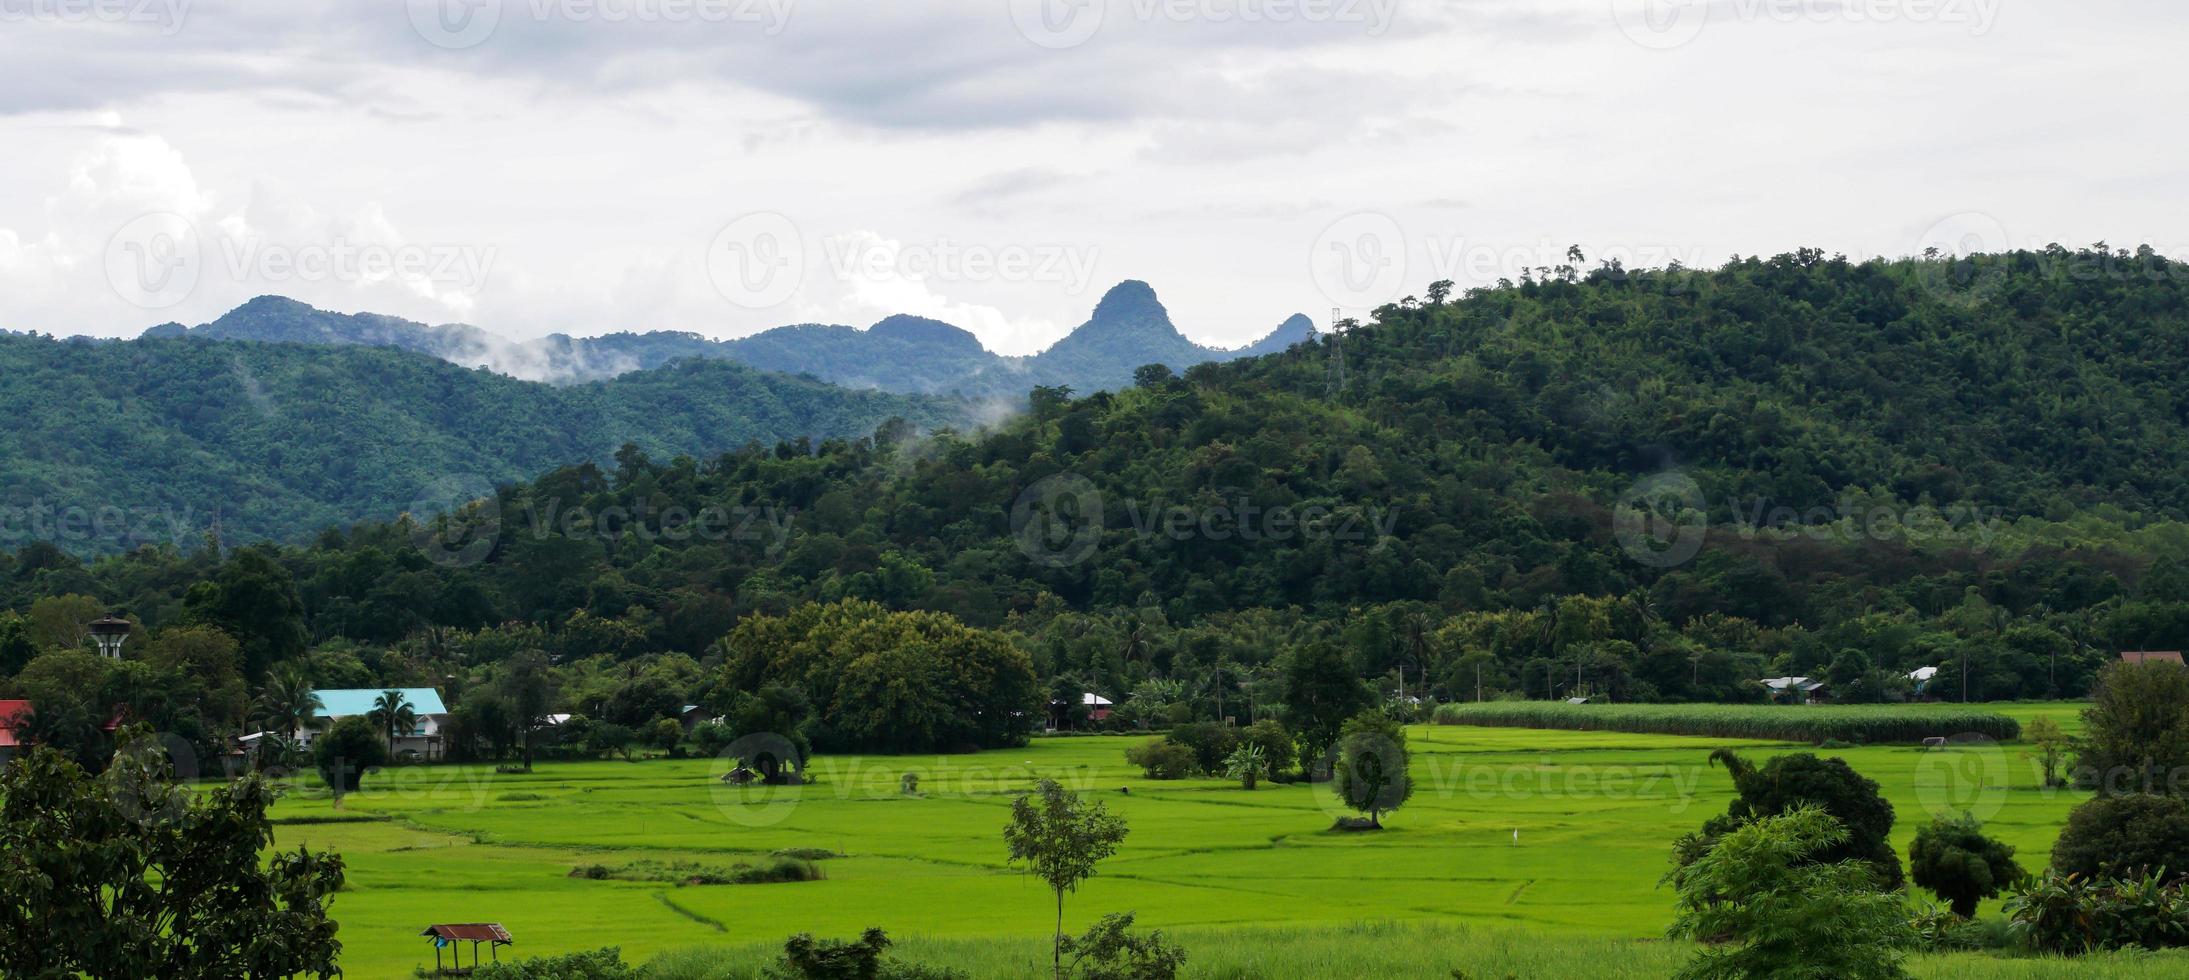 groen rijst- veld- met berg achtergrond onder bewolkt lucht na regen in regenachtig seizoen, panoramisch visie rijst- veld. foto